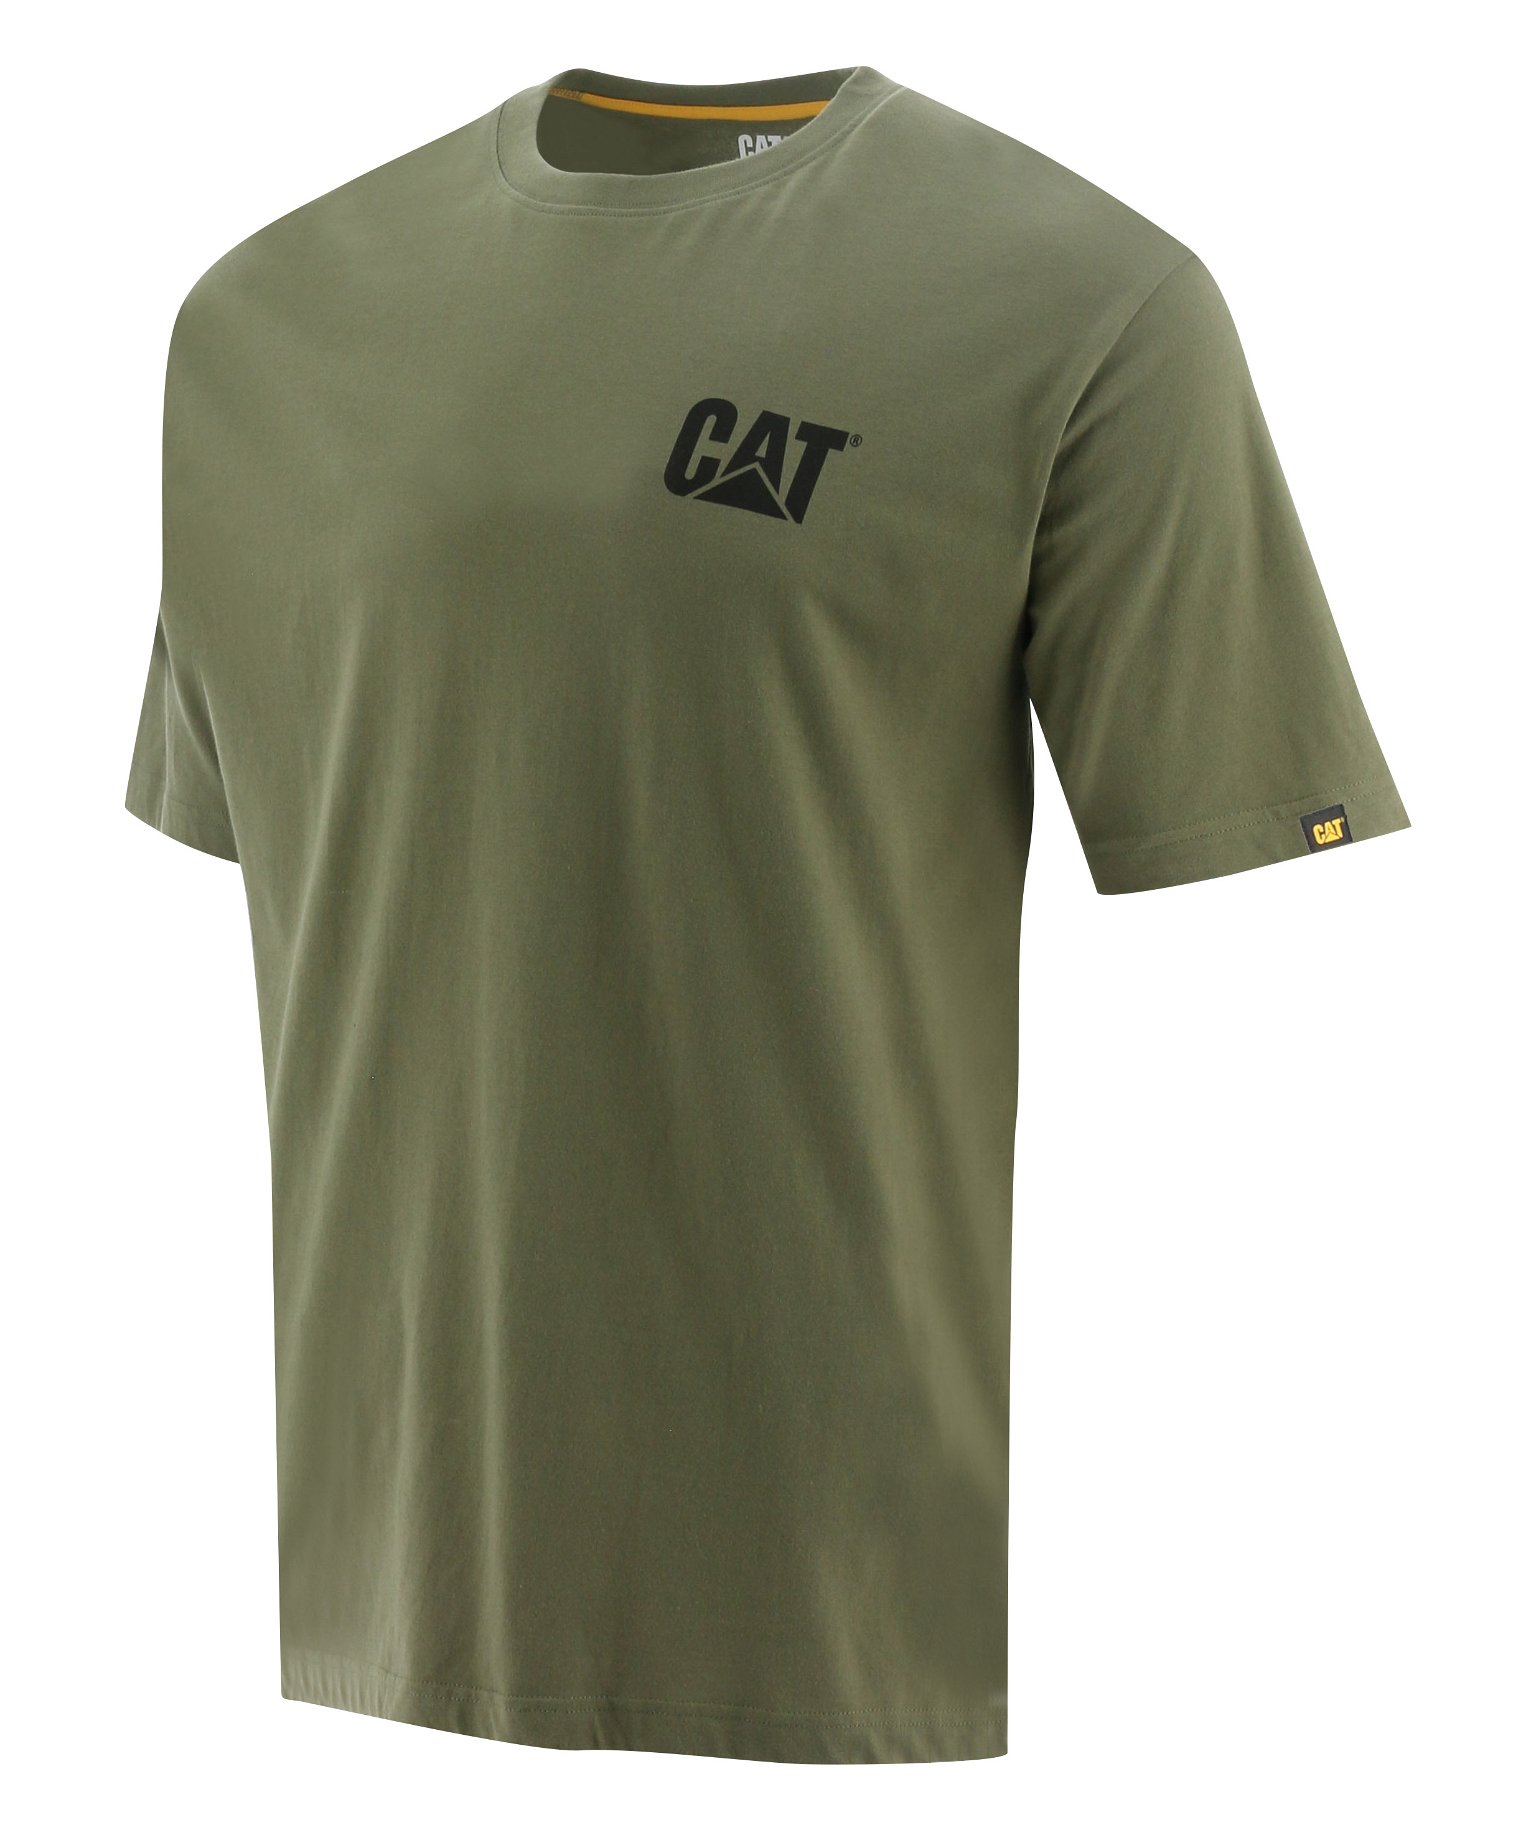 Vyriški marškinėliai trumpomis rankovėmis CAT, chaki spalvos, 2XL dydis